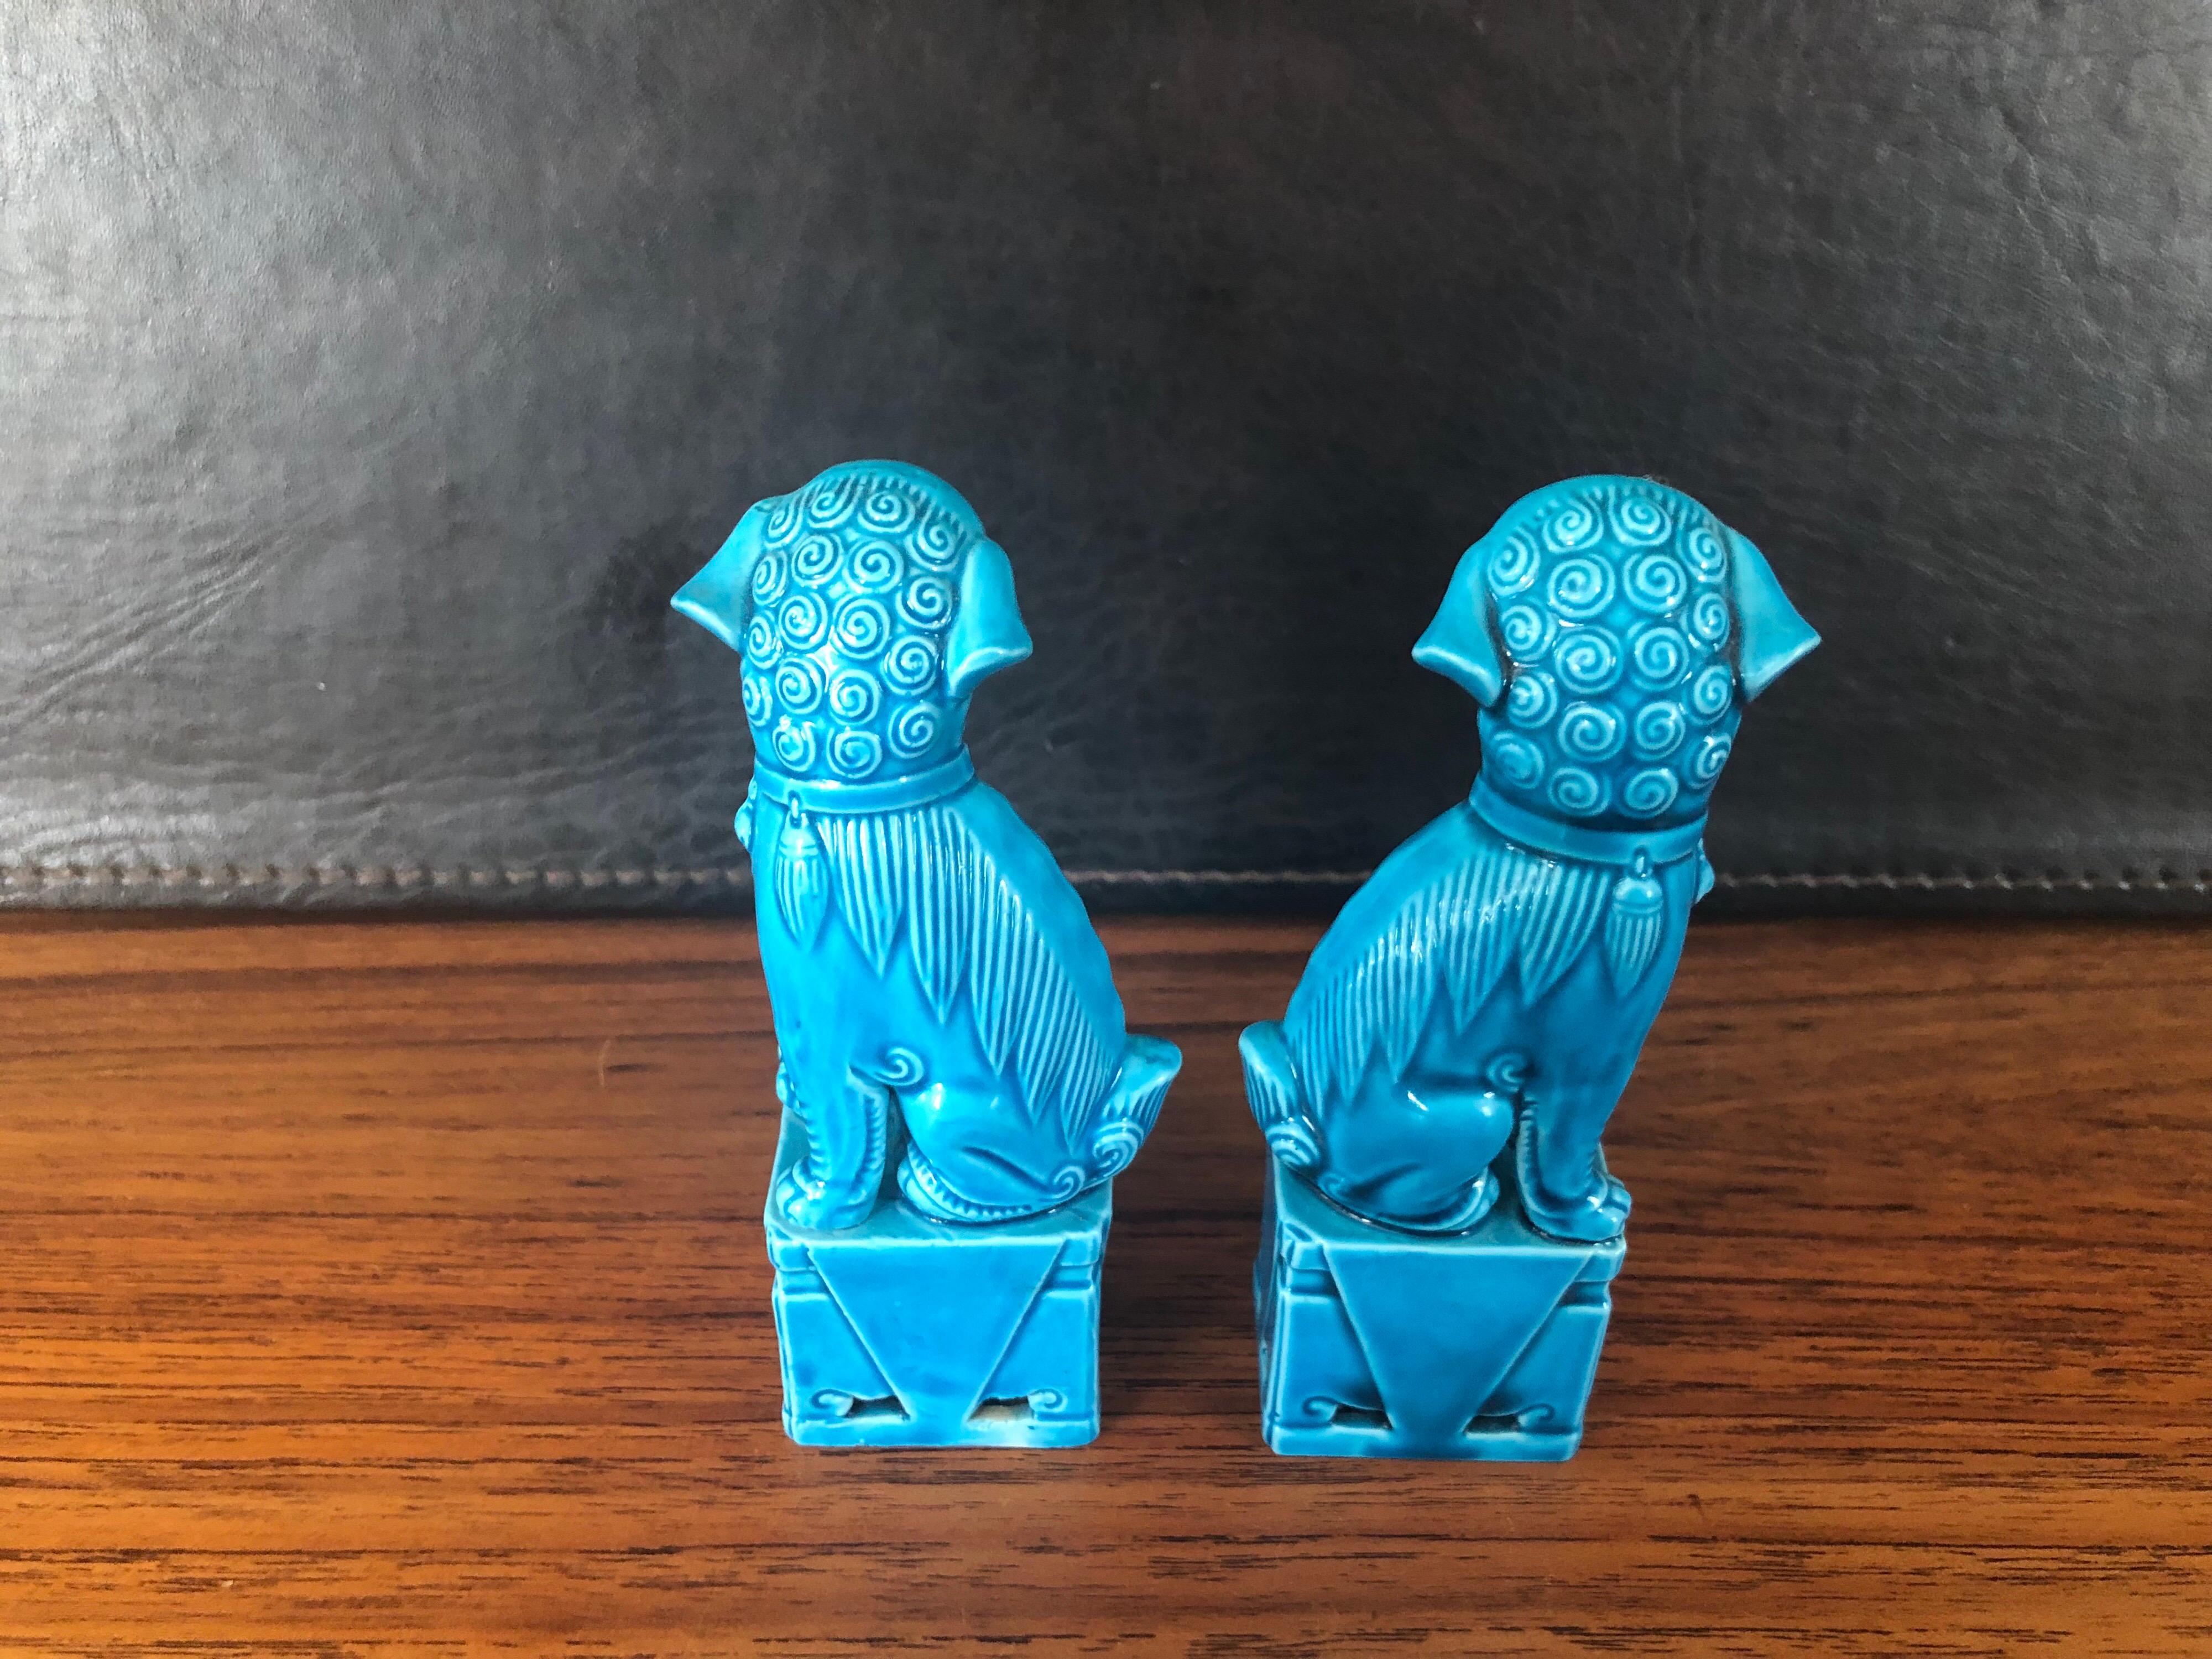 Japanese Unique Pair of Decorative Mini Foo Dogs Sculptures